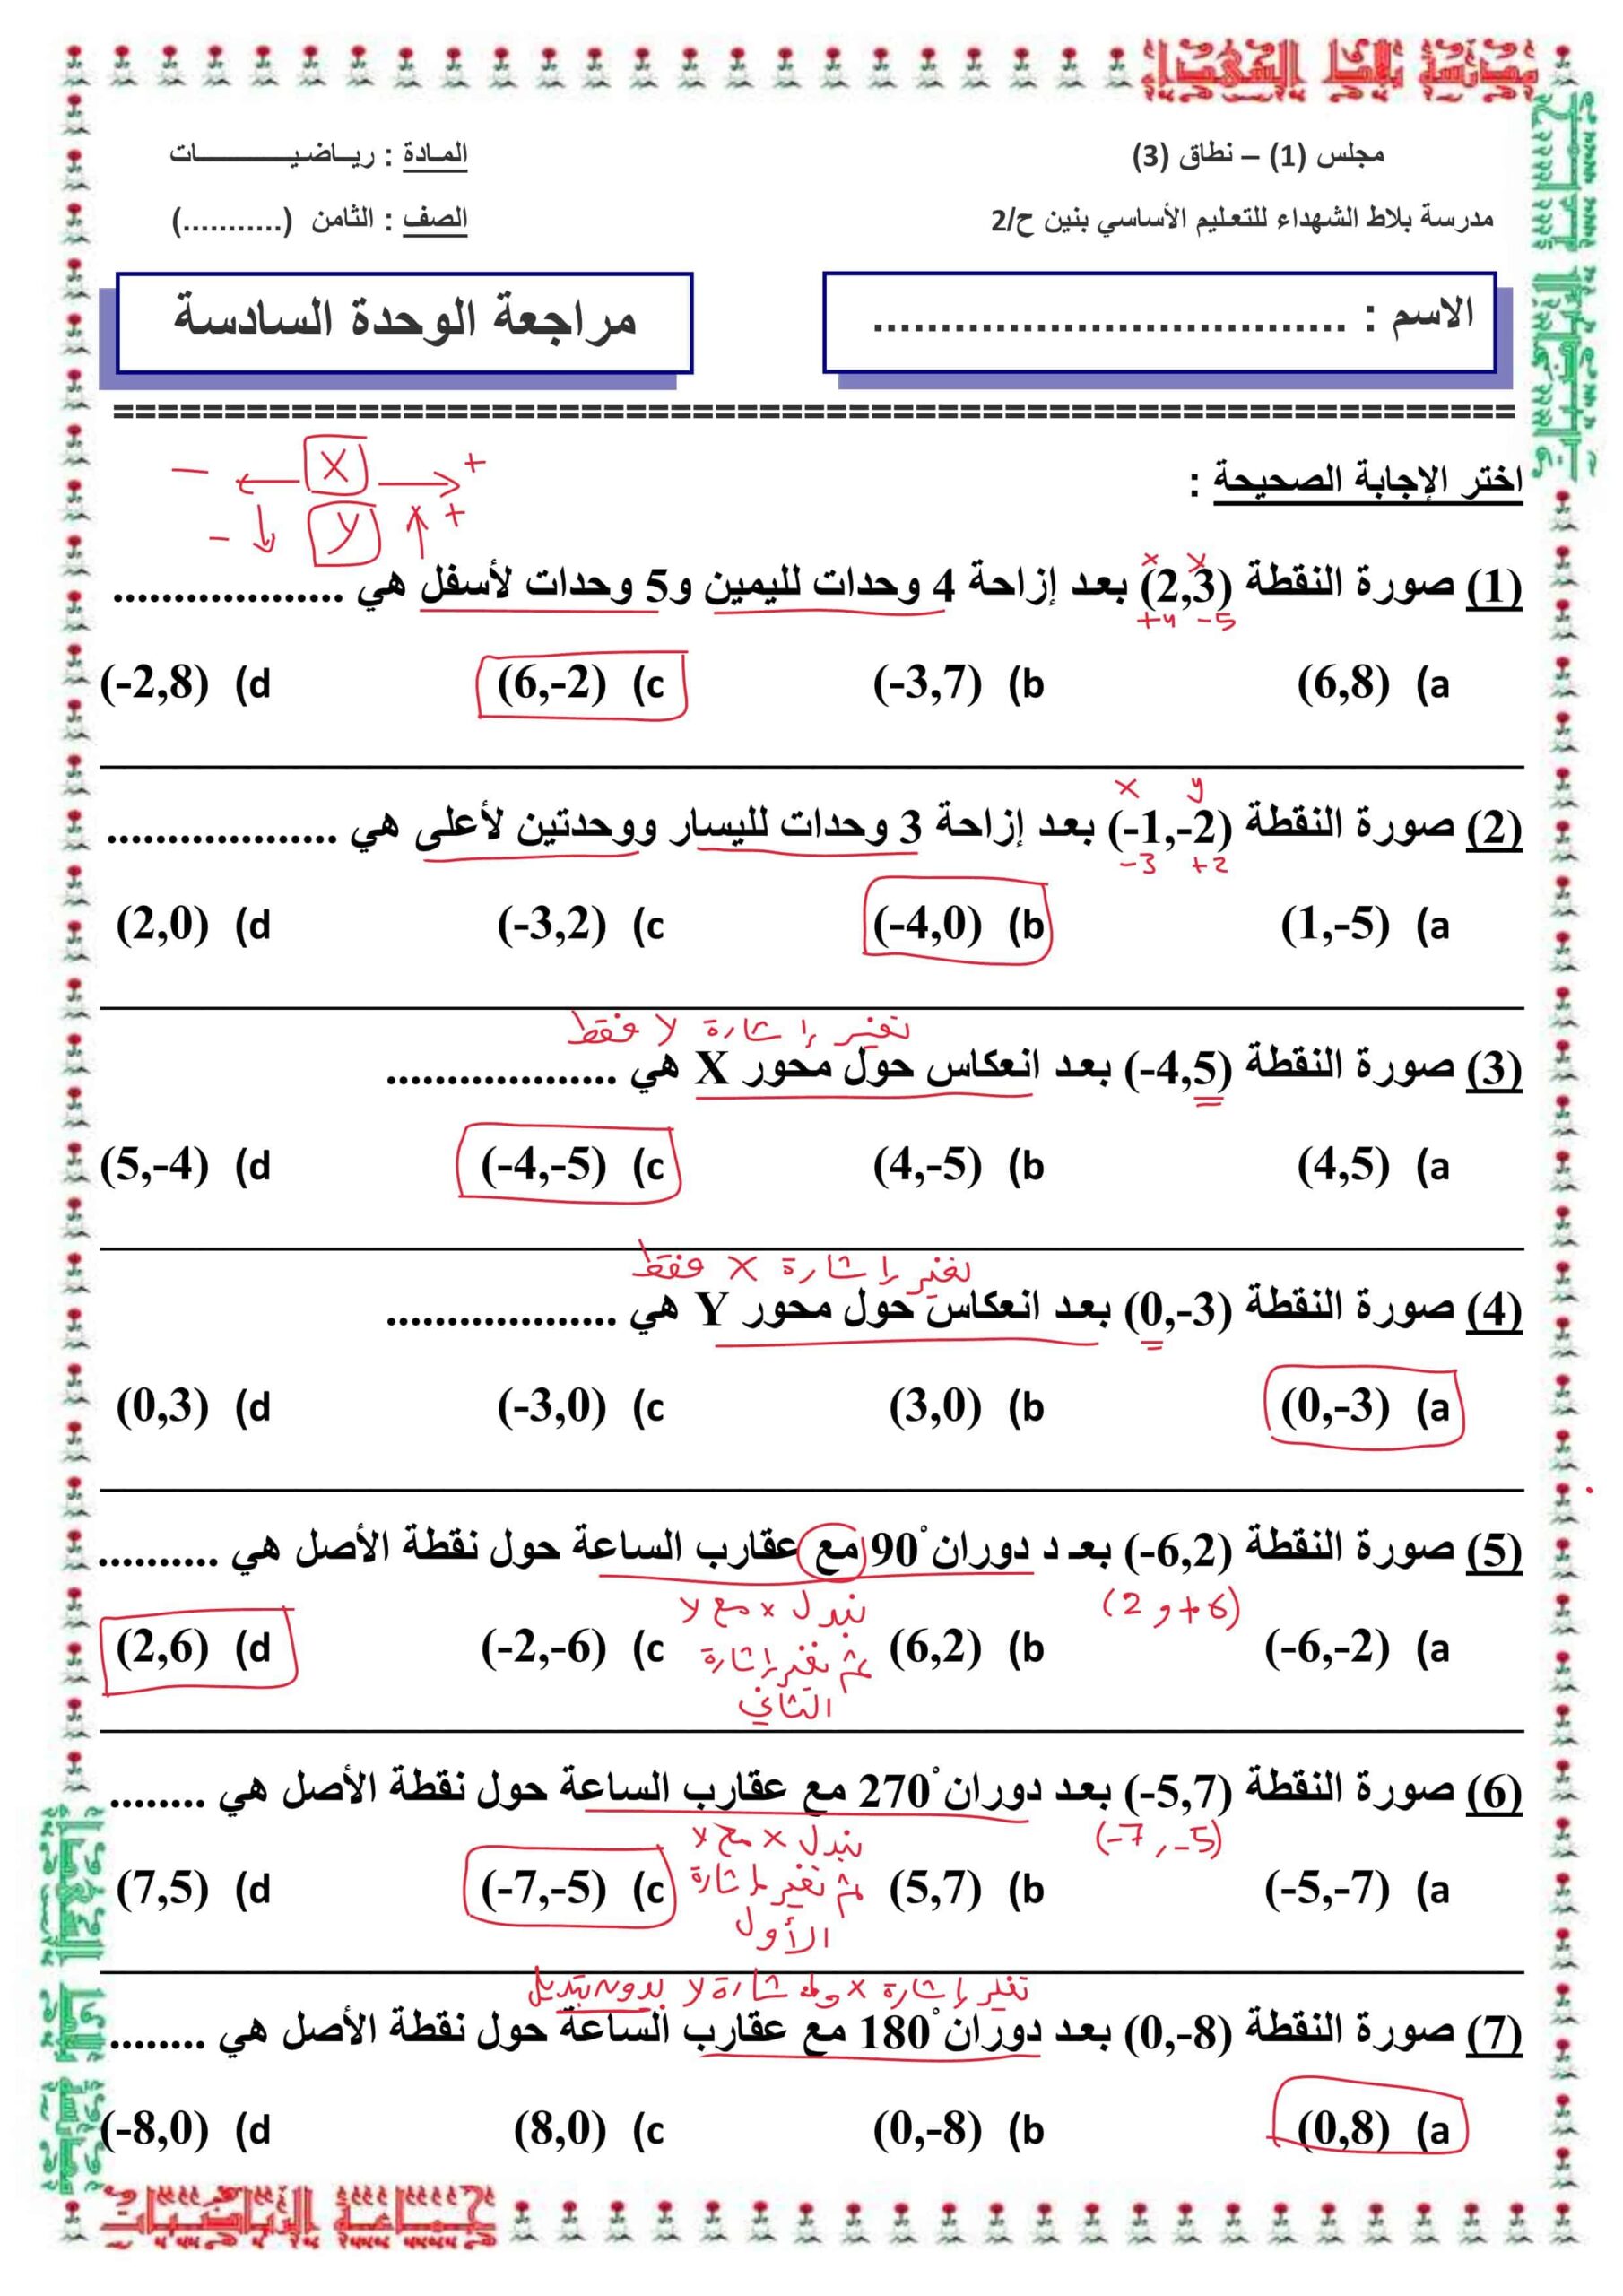 حل أوراق عمل مراجعة الوحدة السادسة الرياضيات المتكاملة الصف الثامن